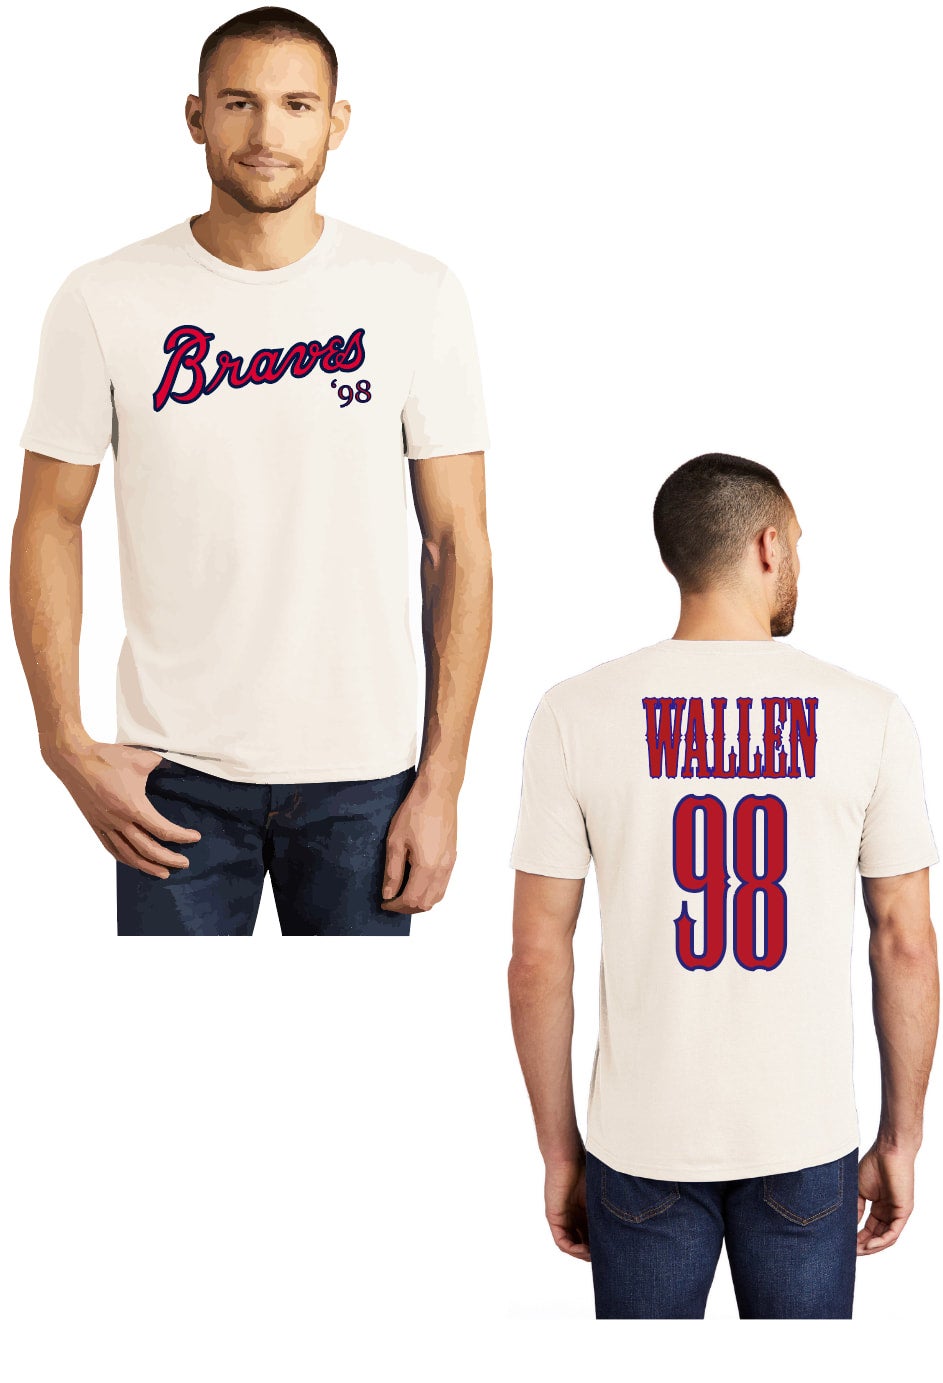 WALLEN 98 Braves – Threads & Theories